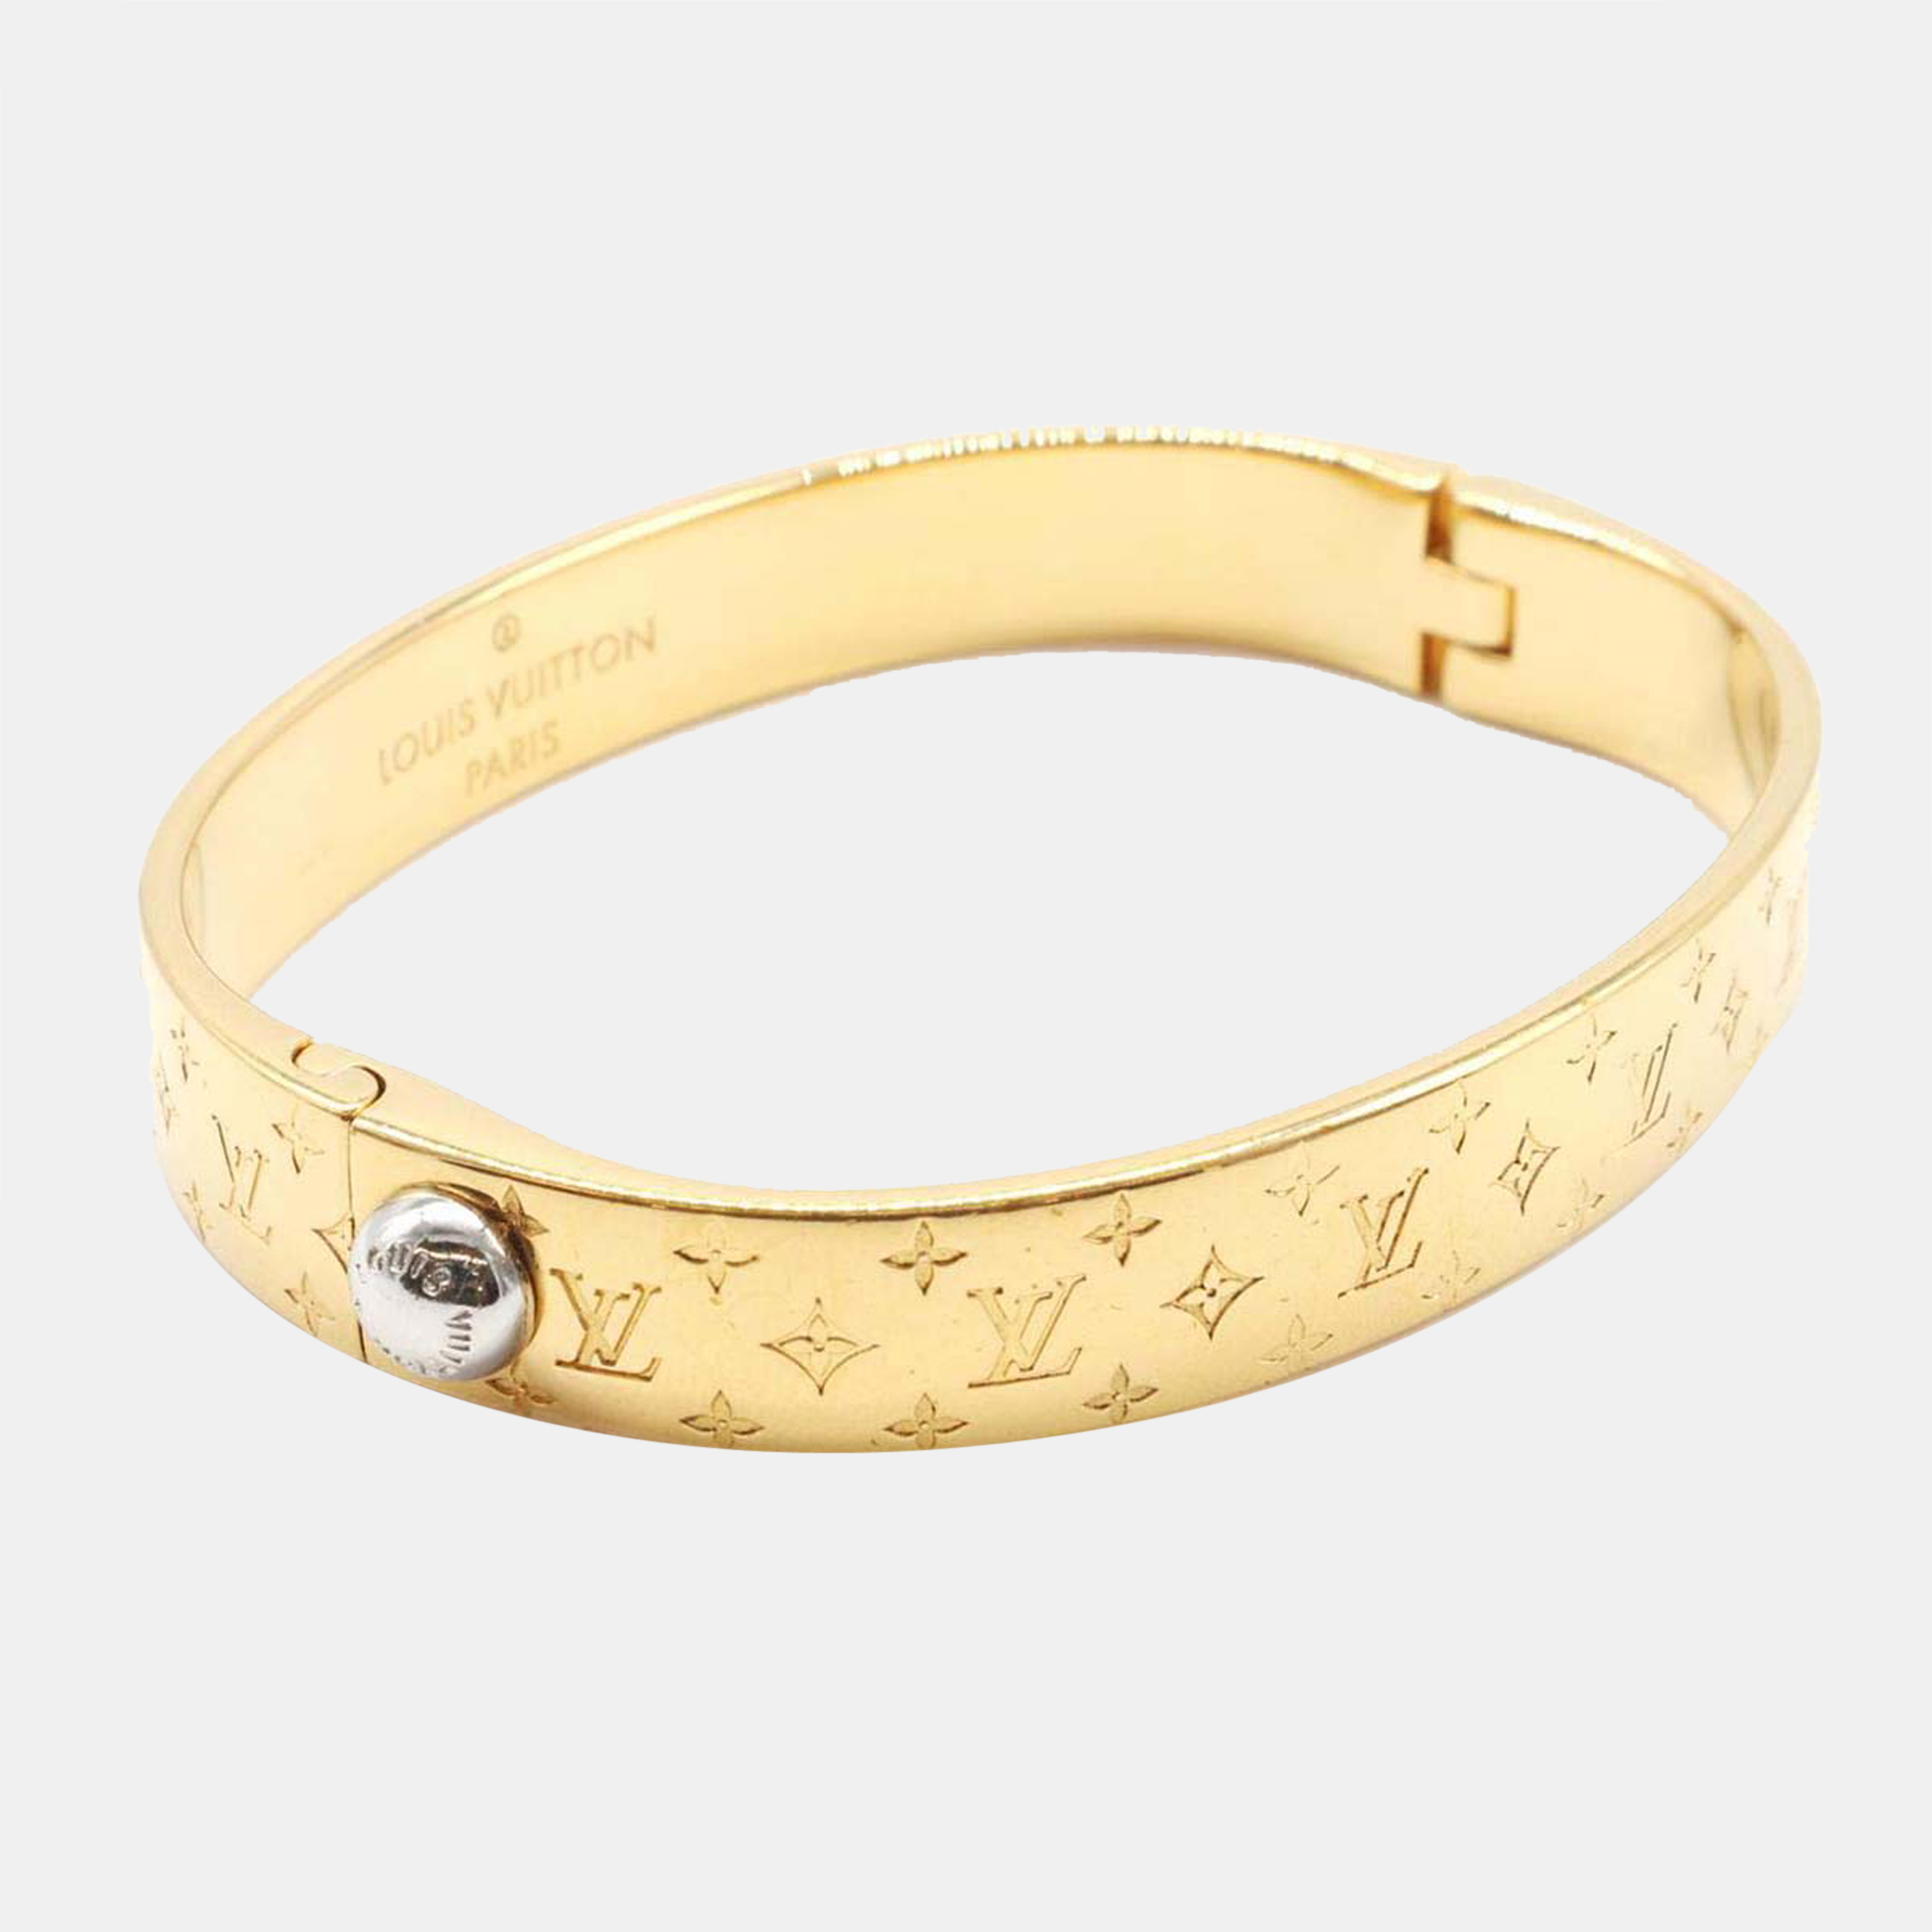 Authenticated Used Louis Vuitton Bracelet Heart Fallen Love M00466  Gold/Silver Color Women's